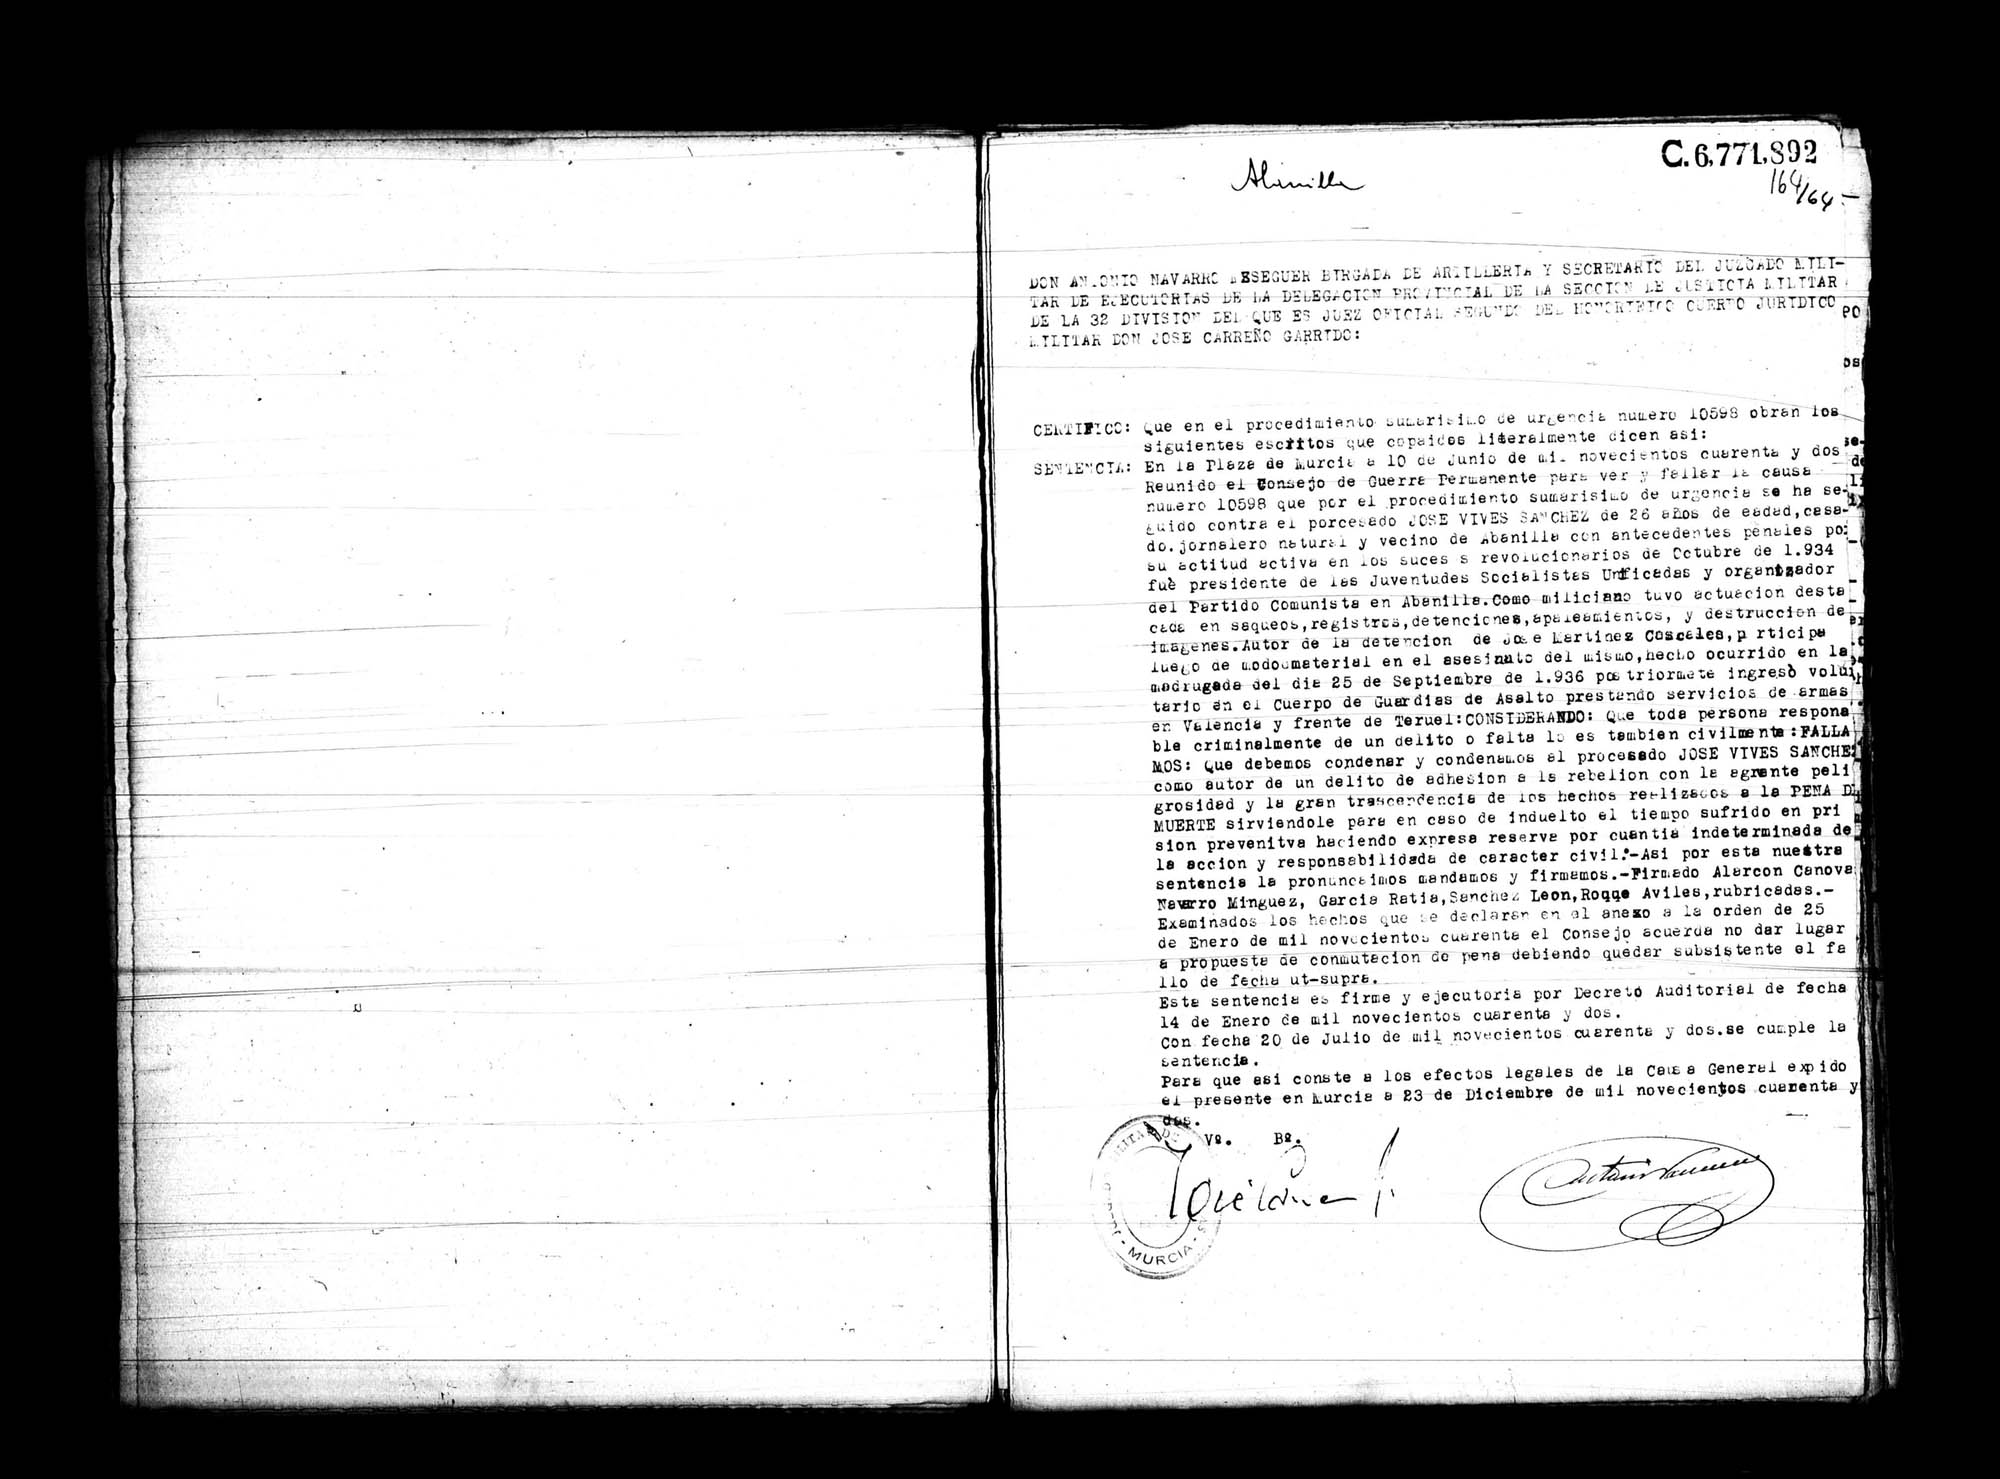 Certificado de la sentencia pronunciada contra José Vives Sánchez, causa 10598, el 10 de junio de 1942 en Murcia.